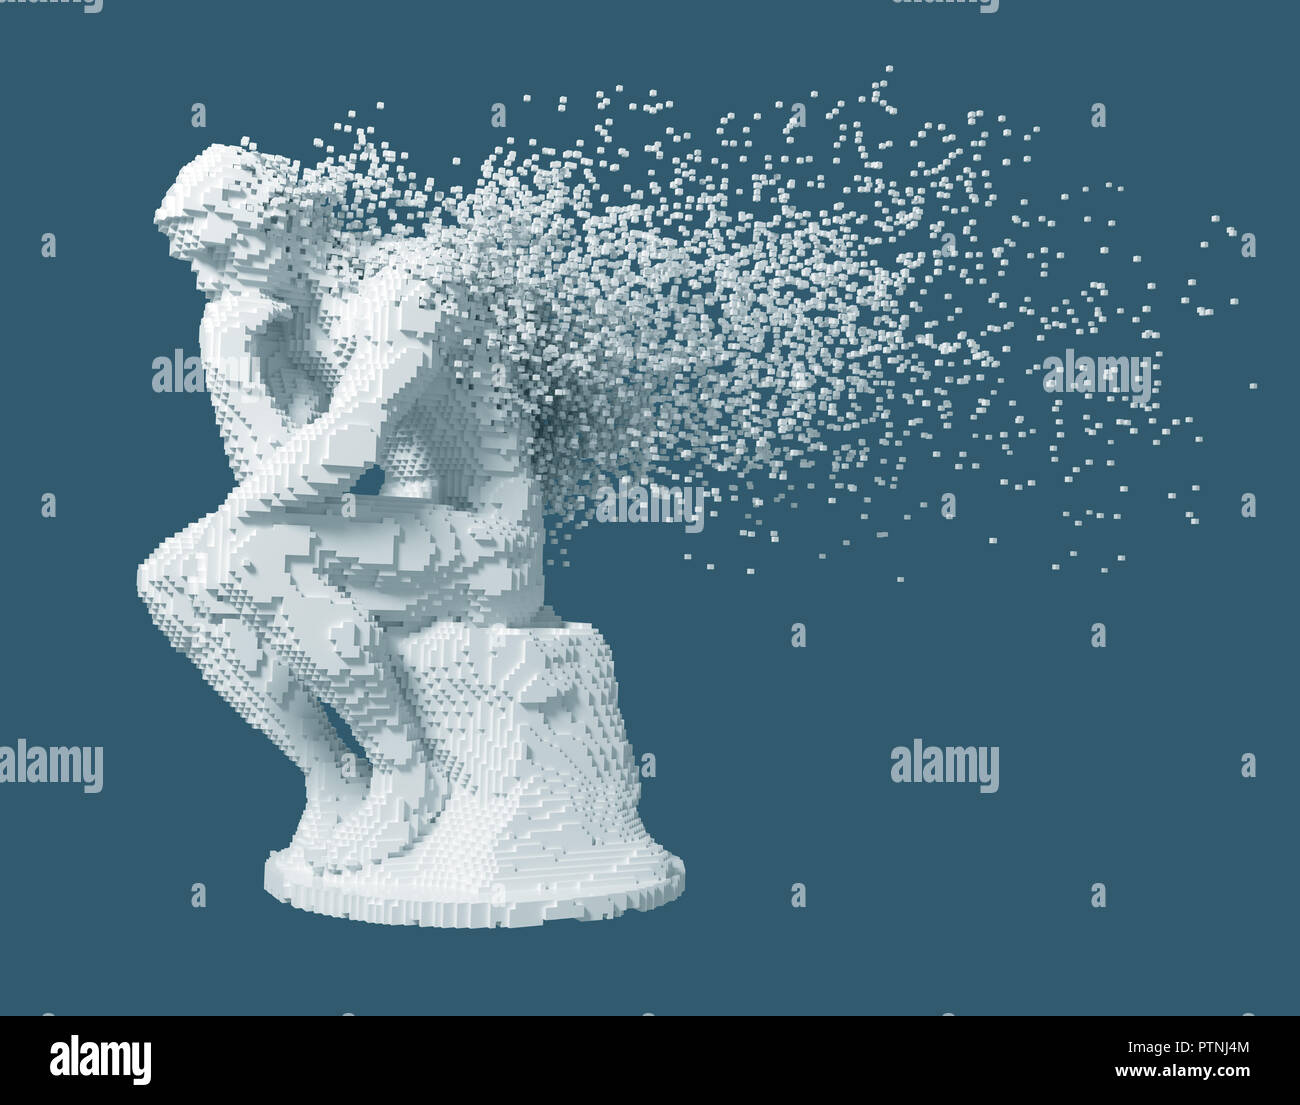 Desintegration Of Digital Sculpture Thinker On Blue Background. 3D Illustration. Stock Photo